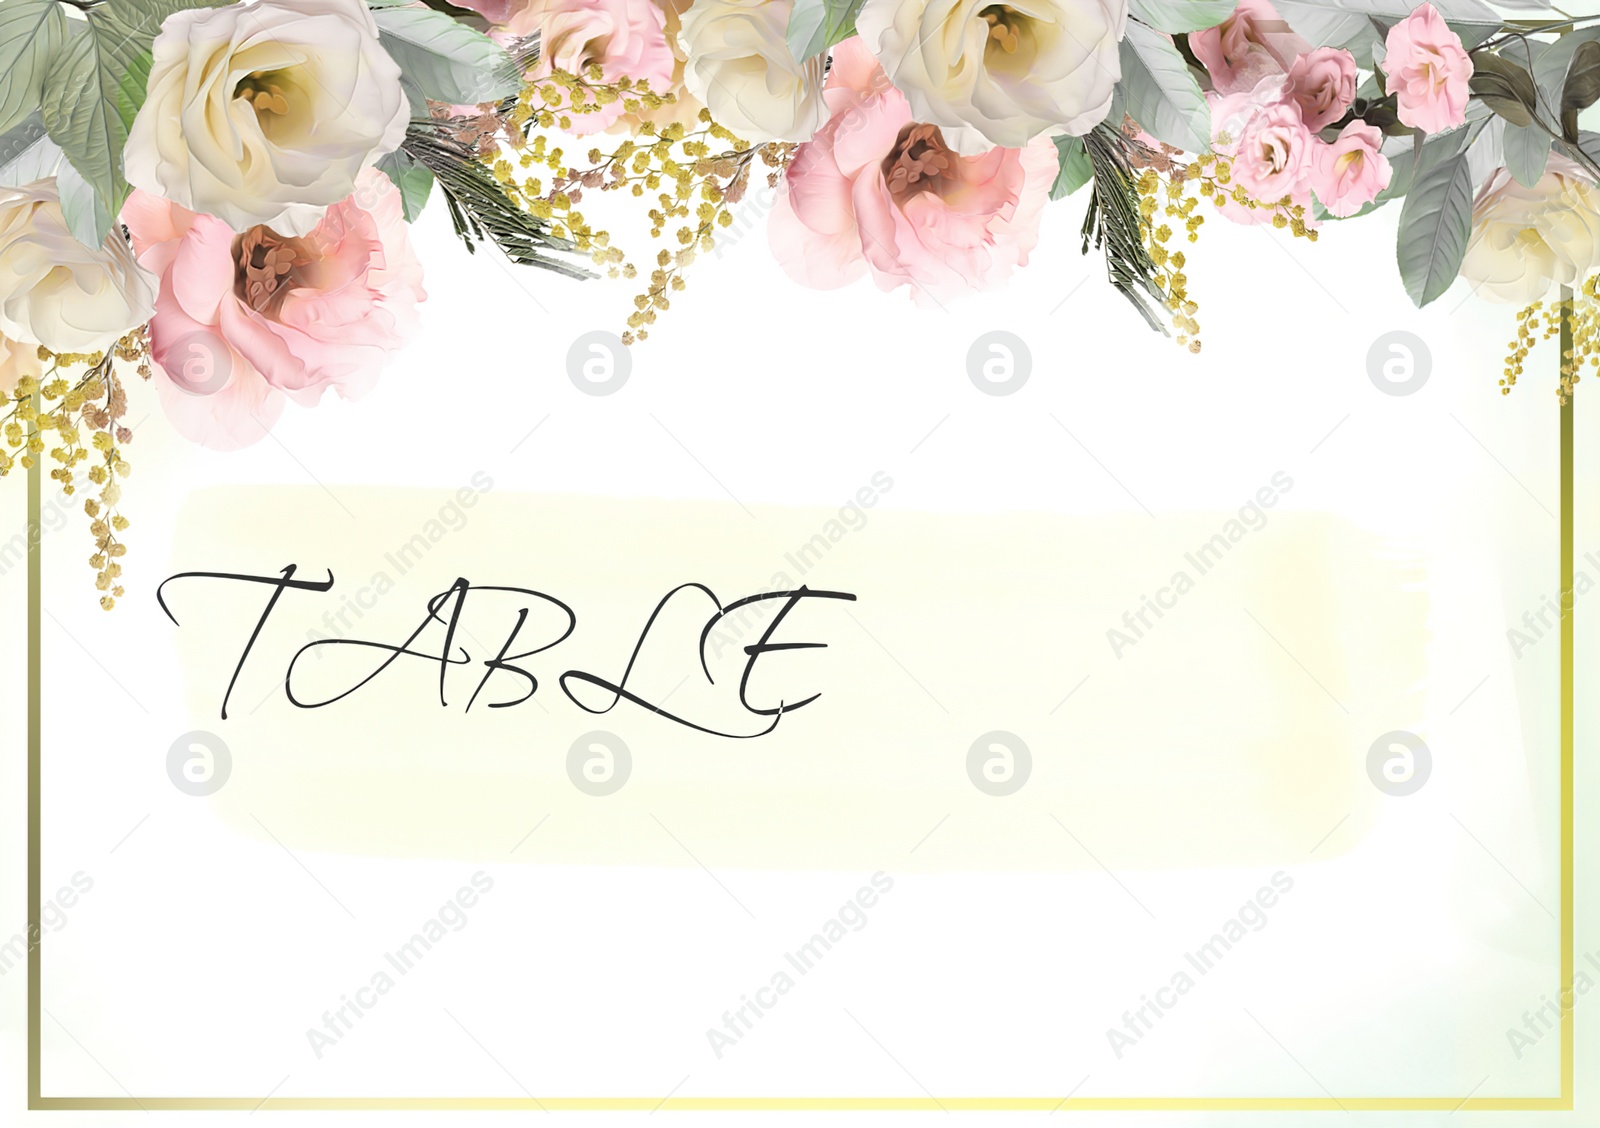 Illustration of Elegant wedding place card with floral design. Mockup